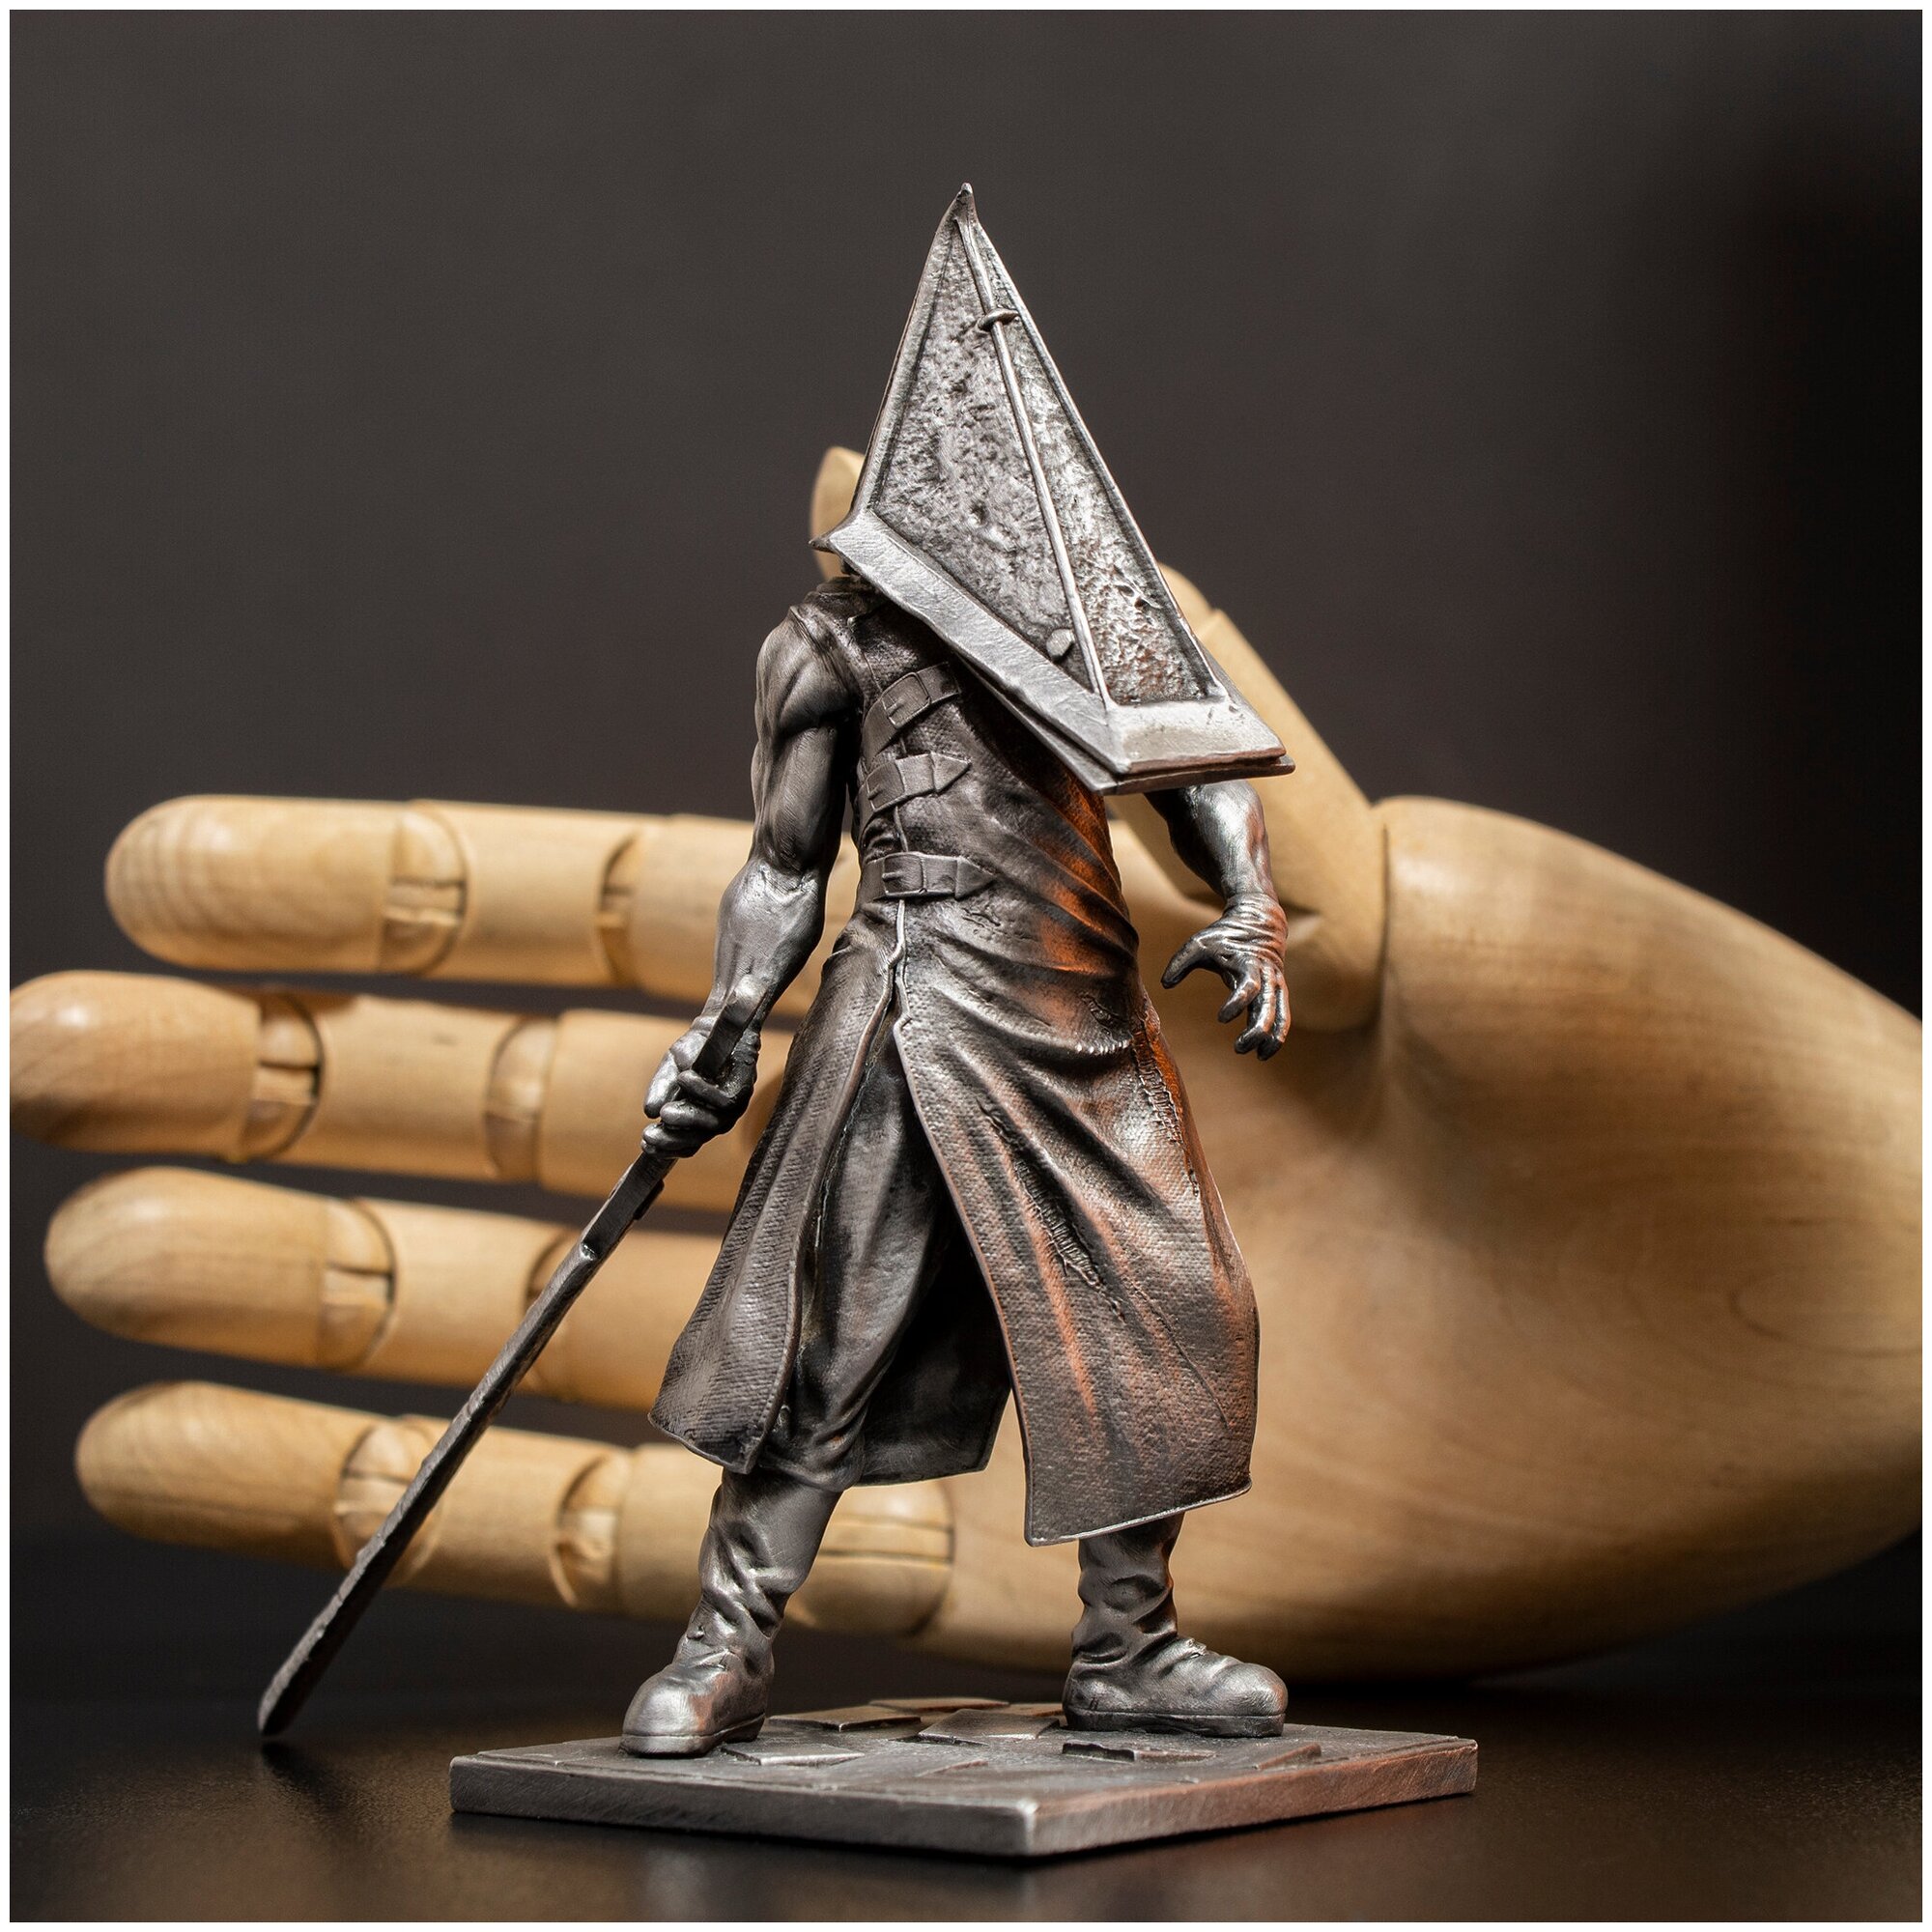 Пирамидоголовый из Сайлент Хилл металлическая фигурка коллекционное издание / Pyramid Head Silent Hill collector's edition